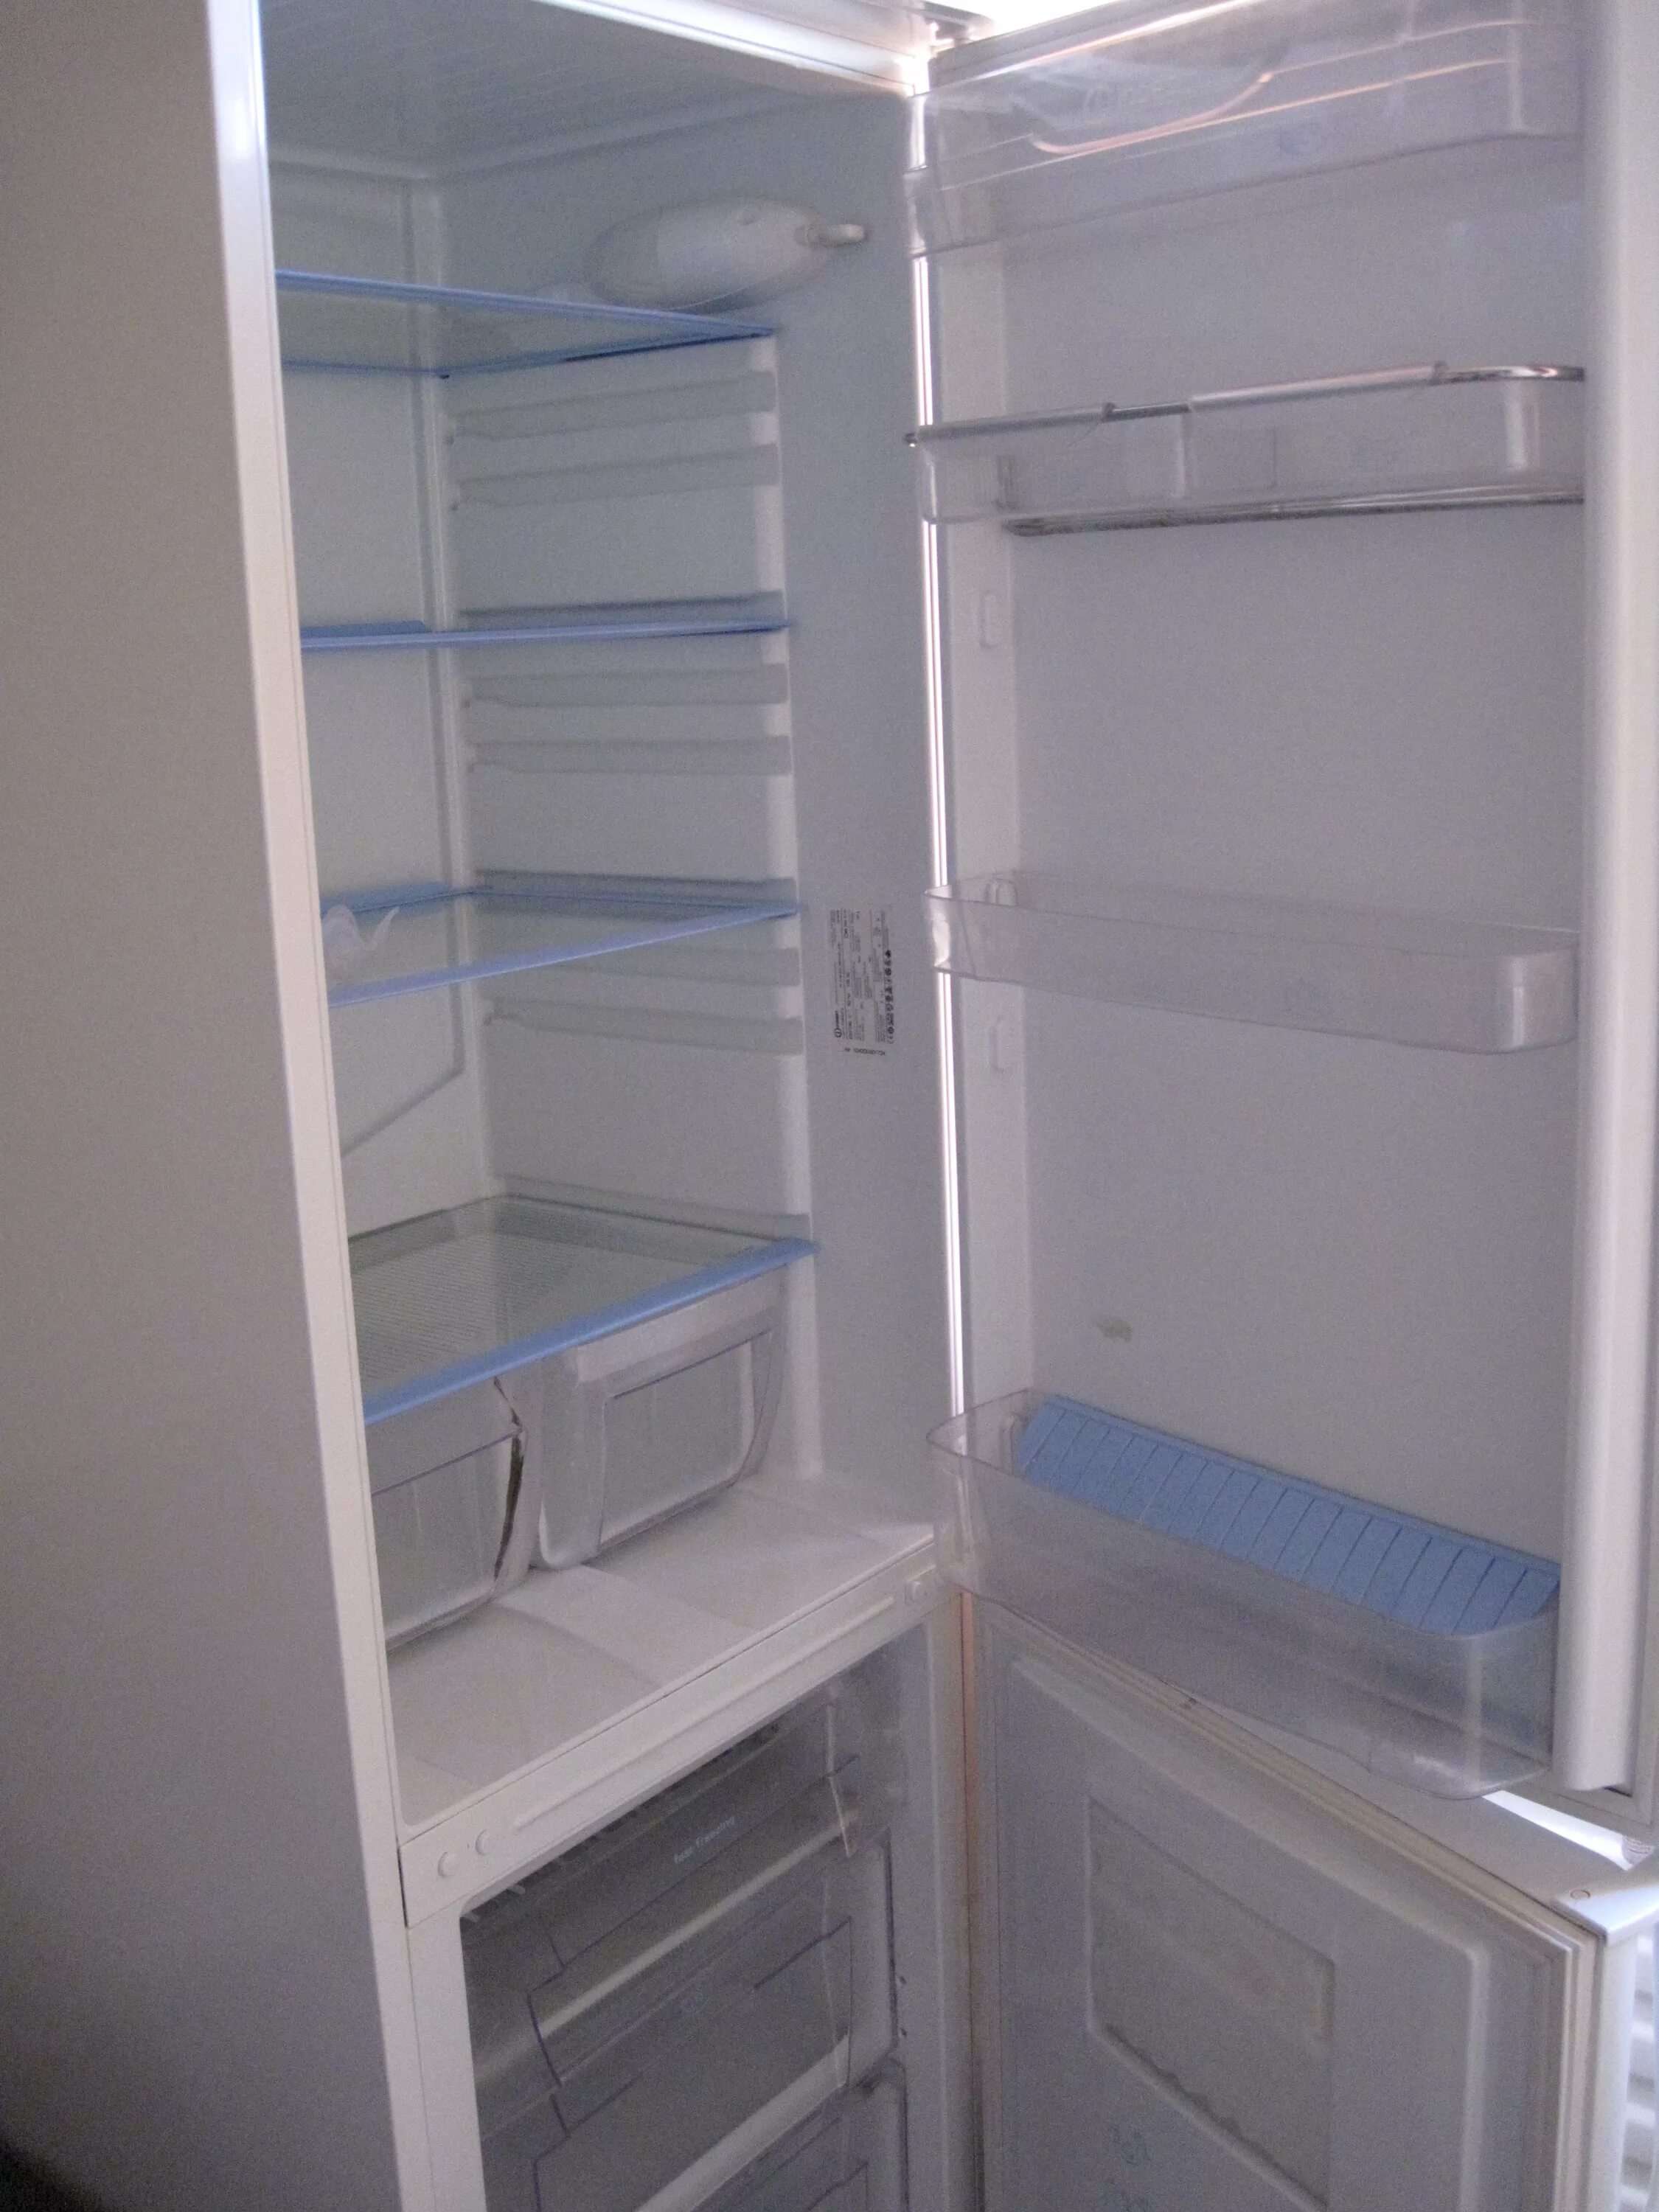 Полки для холодильника индезит. Индезит c138g. Холодильник Индезит c138g.016.